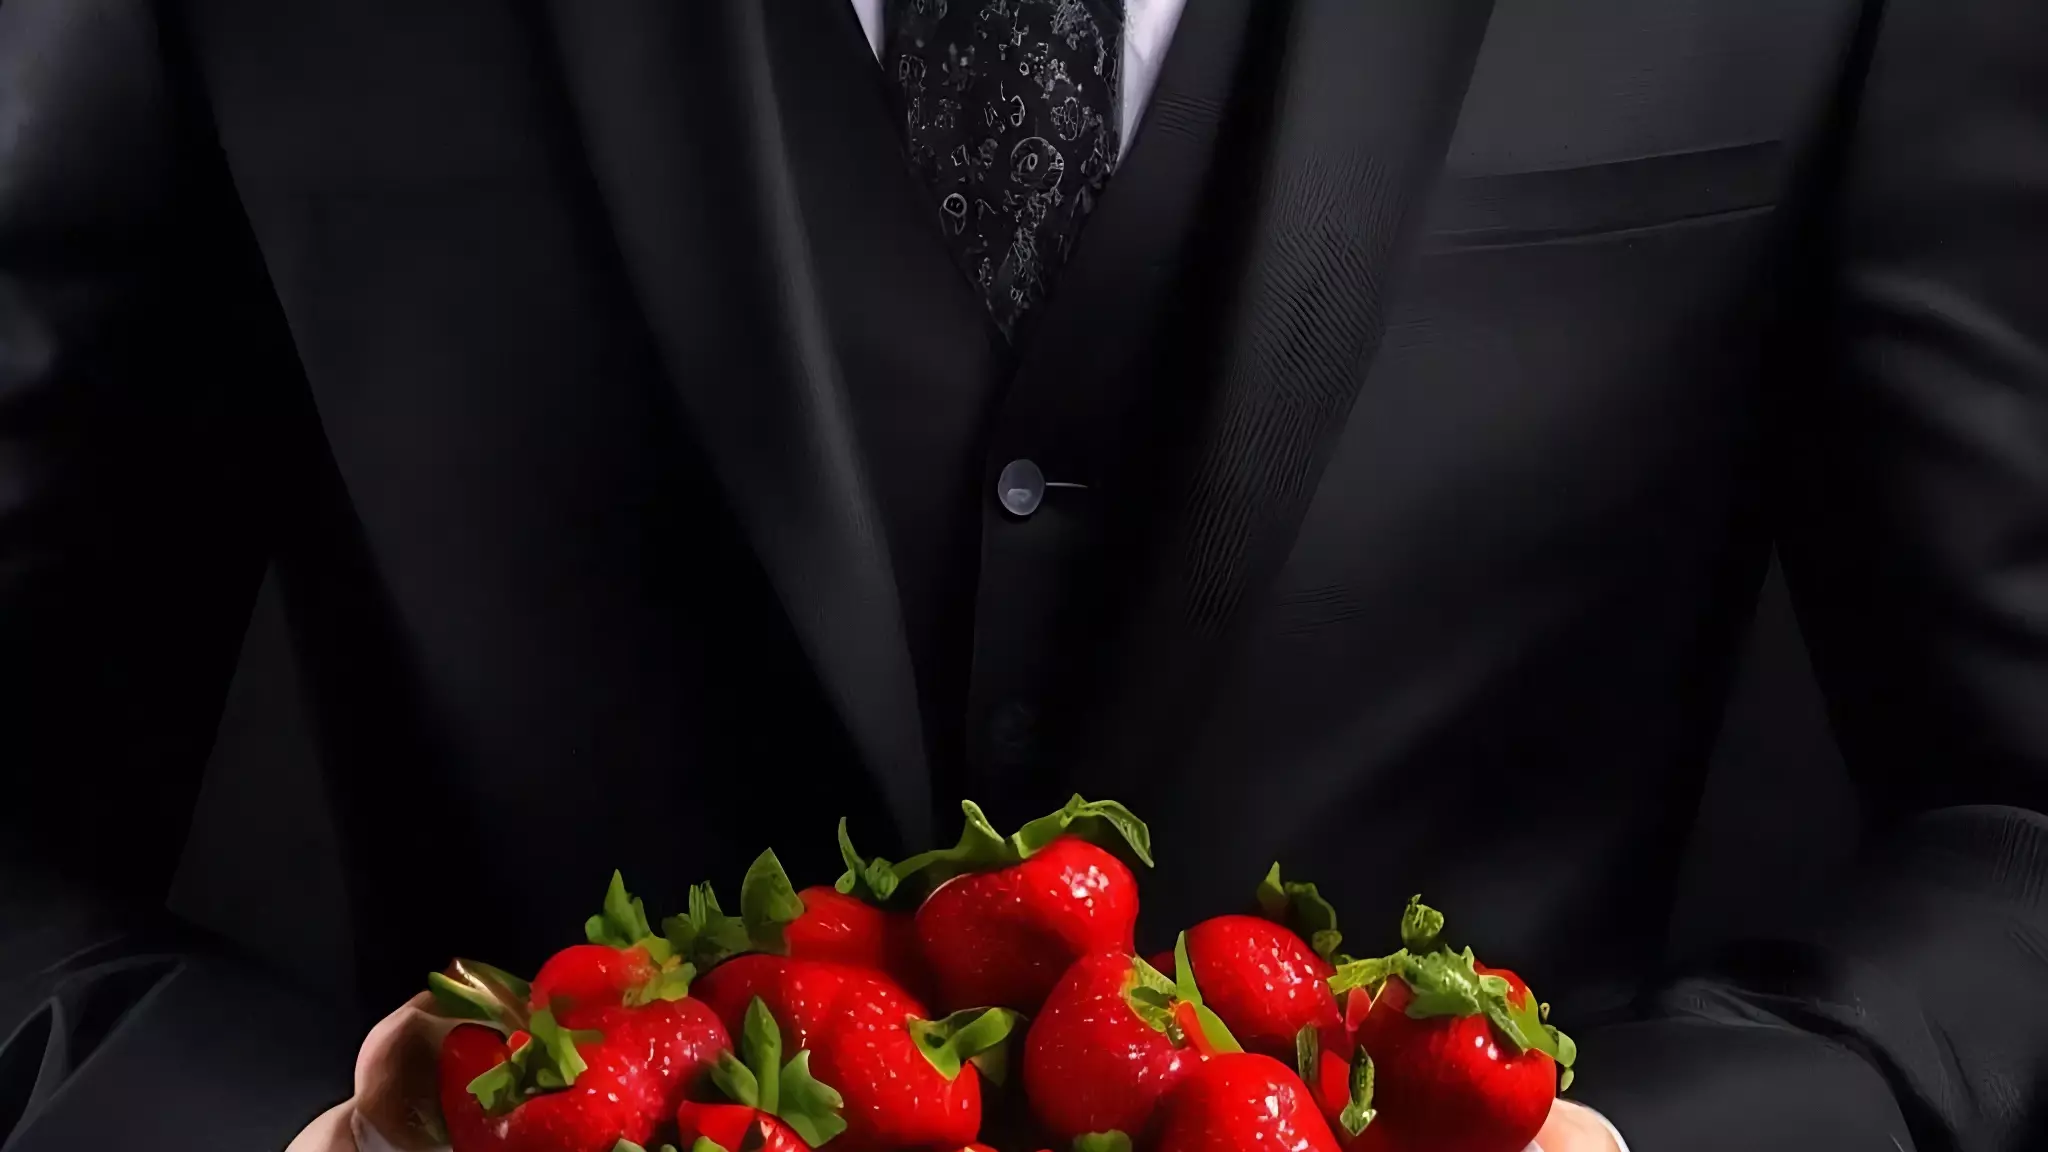 Раздавал прохожим ягоду в необычном виде житель Приморского края